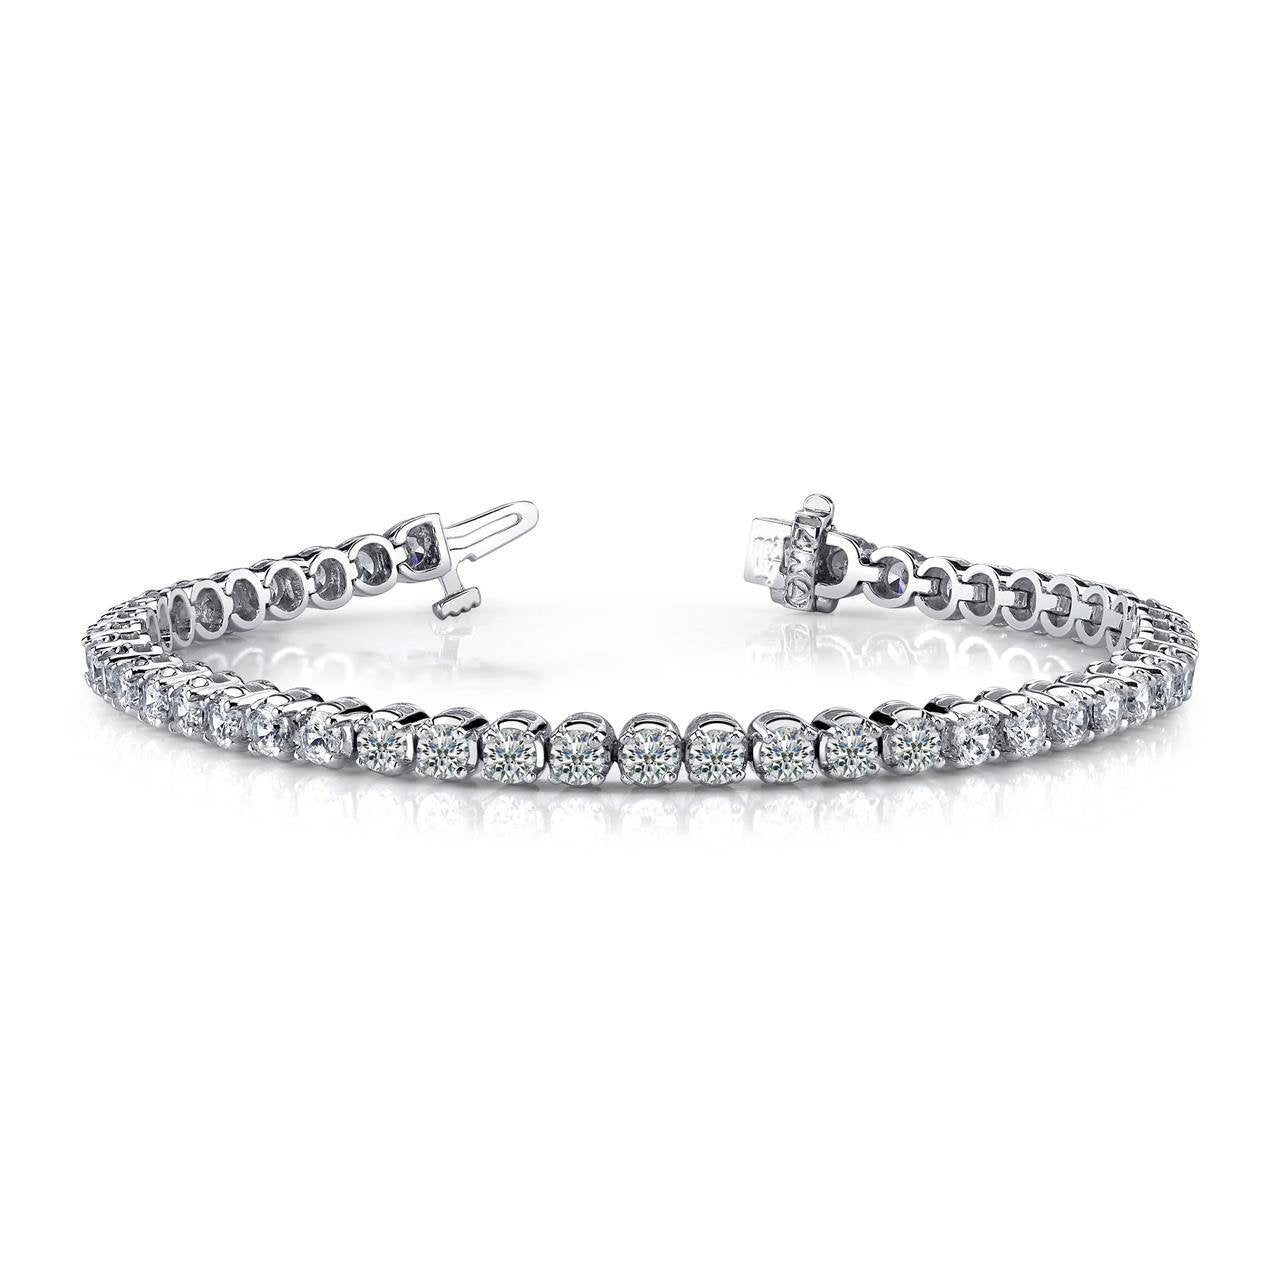 Bracelet de tennis pour femme avec diamants ronds taille brillant de 9 cts - HarryChadEnt.FR